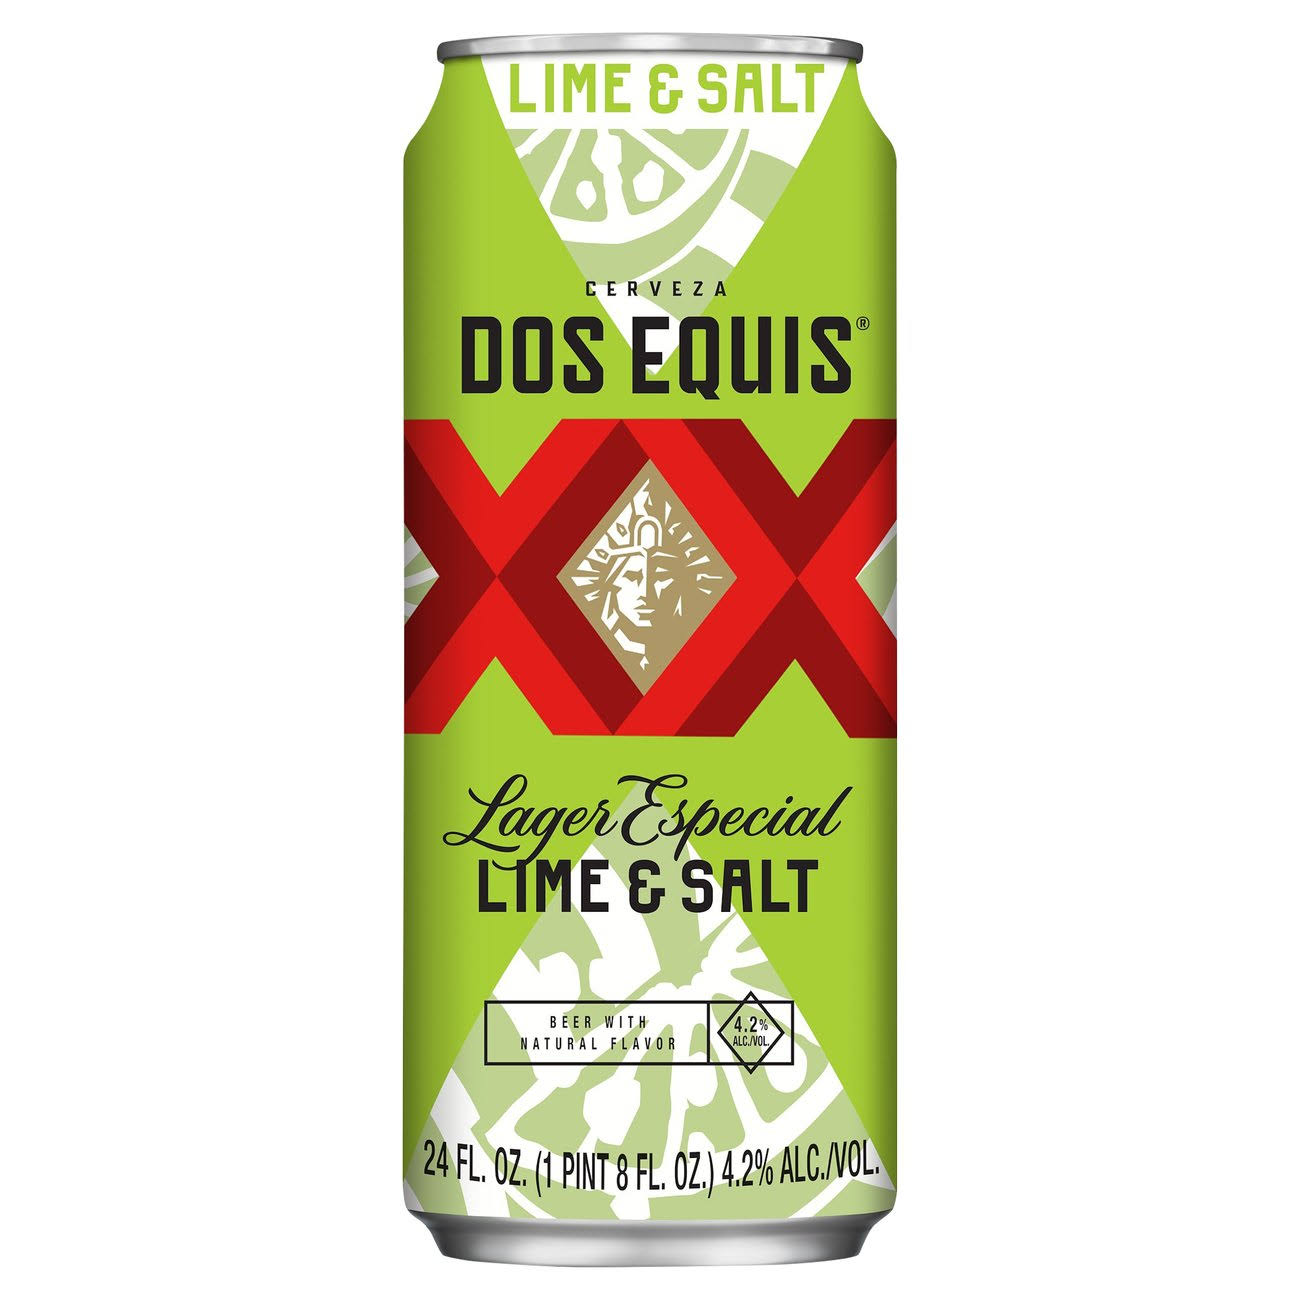 Dos Equis Beer, Lager Especial, Lime & Salt - 24 fl oz